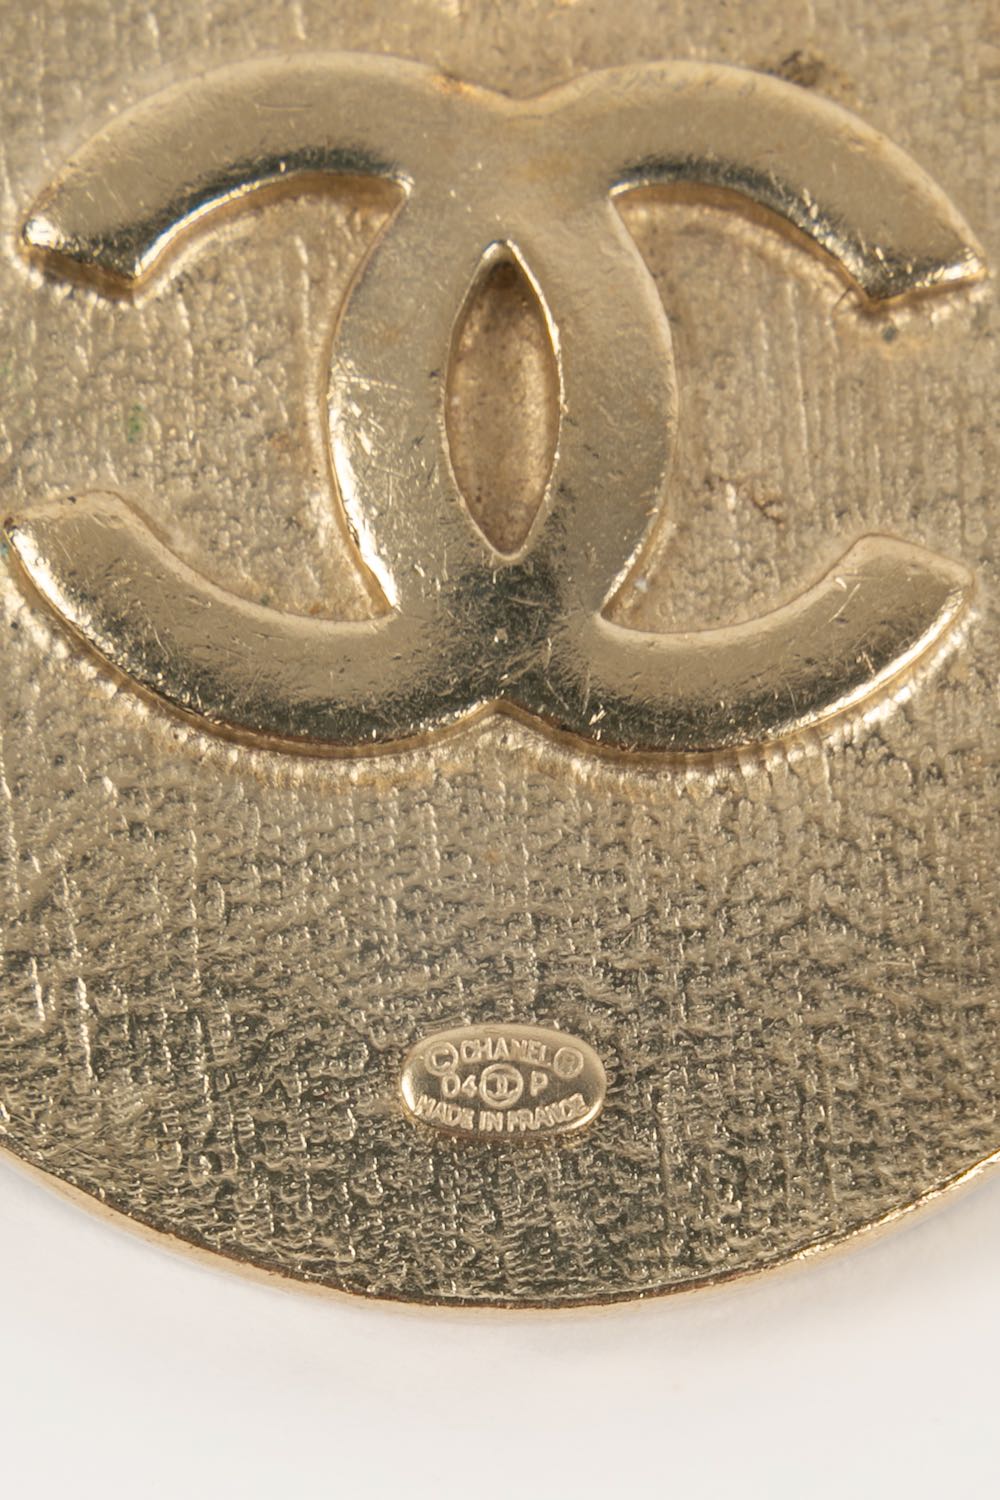 Pins Make Up Chanel 2004